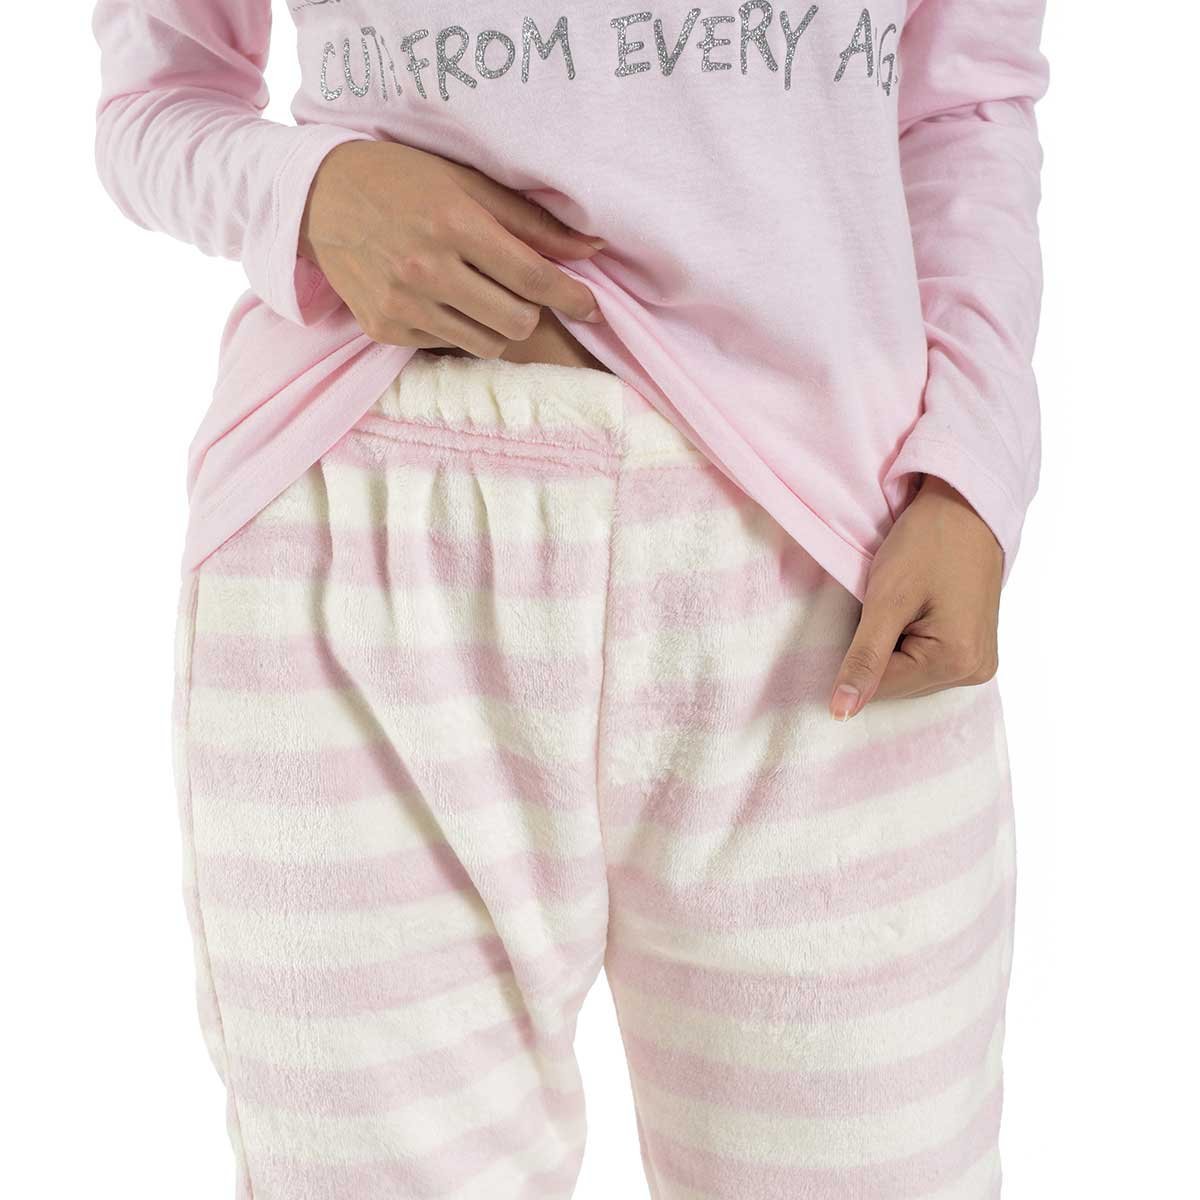 Pijama para Dama Playera Y Pantal&oacute;n Estampado Piolin Looney Tunes